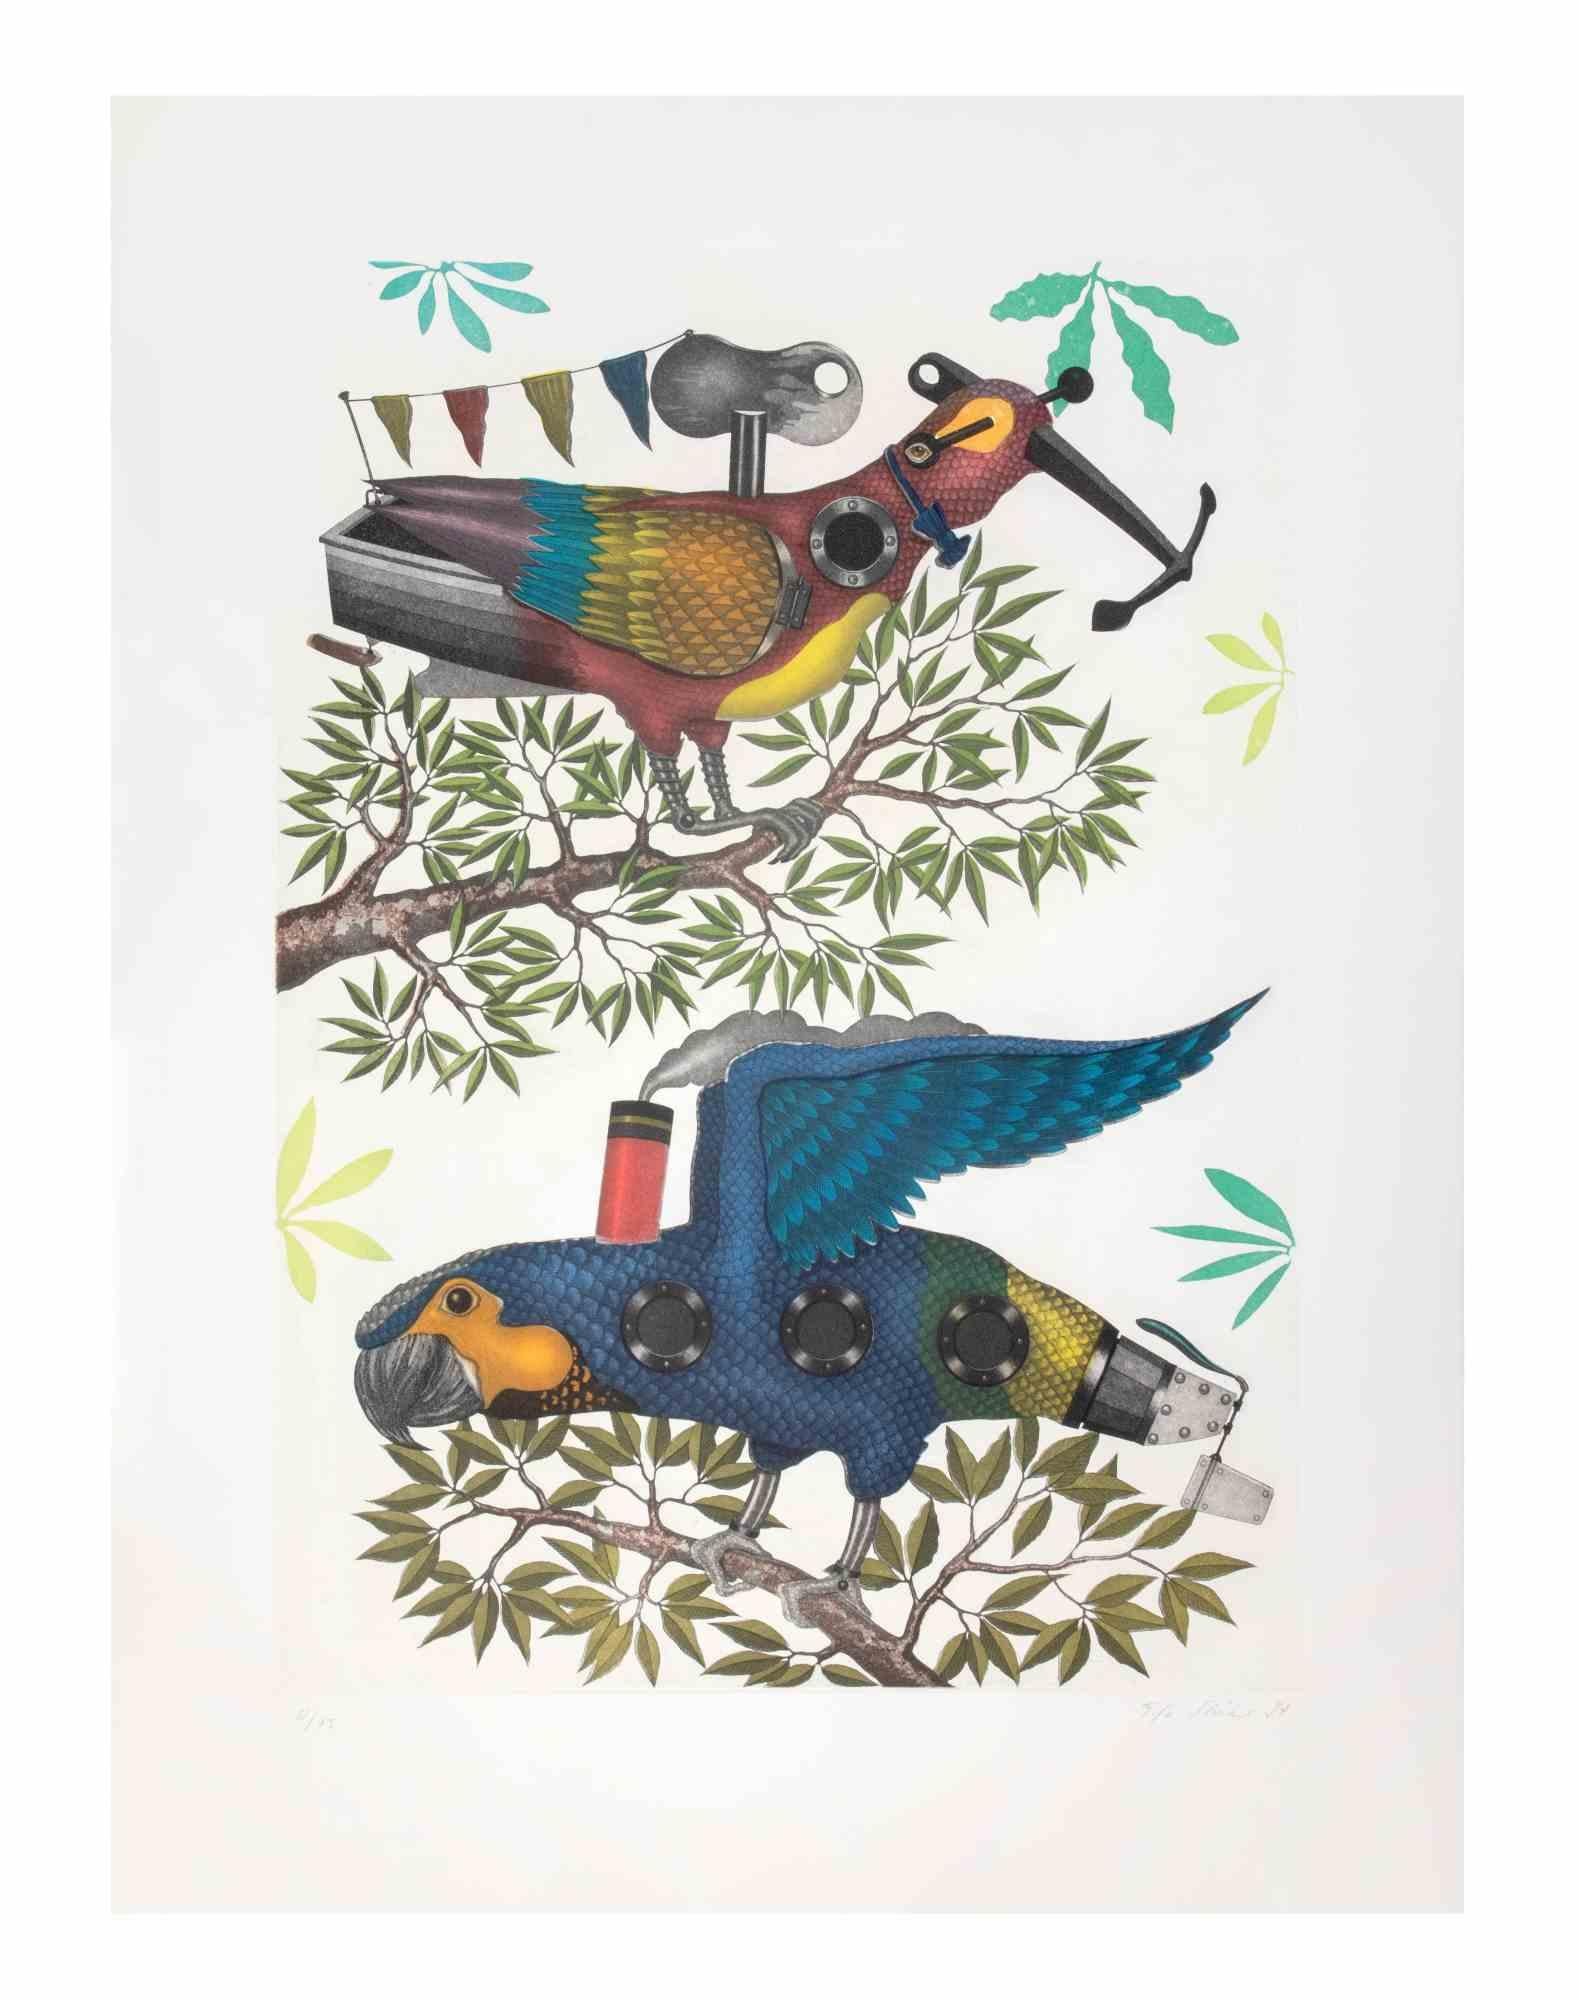 Mechanical Parrots ist ein zeitgenössisches Kunstwerk des Künstlers Fifo Stricker aus dem Jahr 1997.

Gemischte farbige Aquatinta und Radierung. 

Vom Künstler am rechten unteren Rand handsigniert und datiert.

Am linken unteren Rand nummeriert.